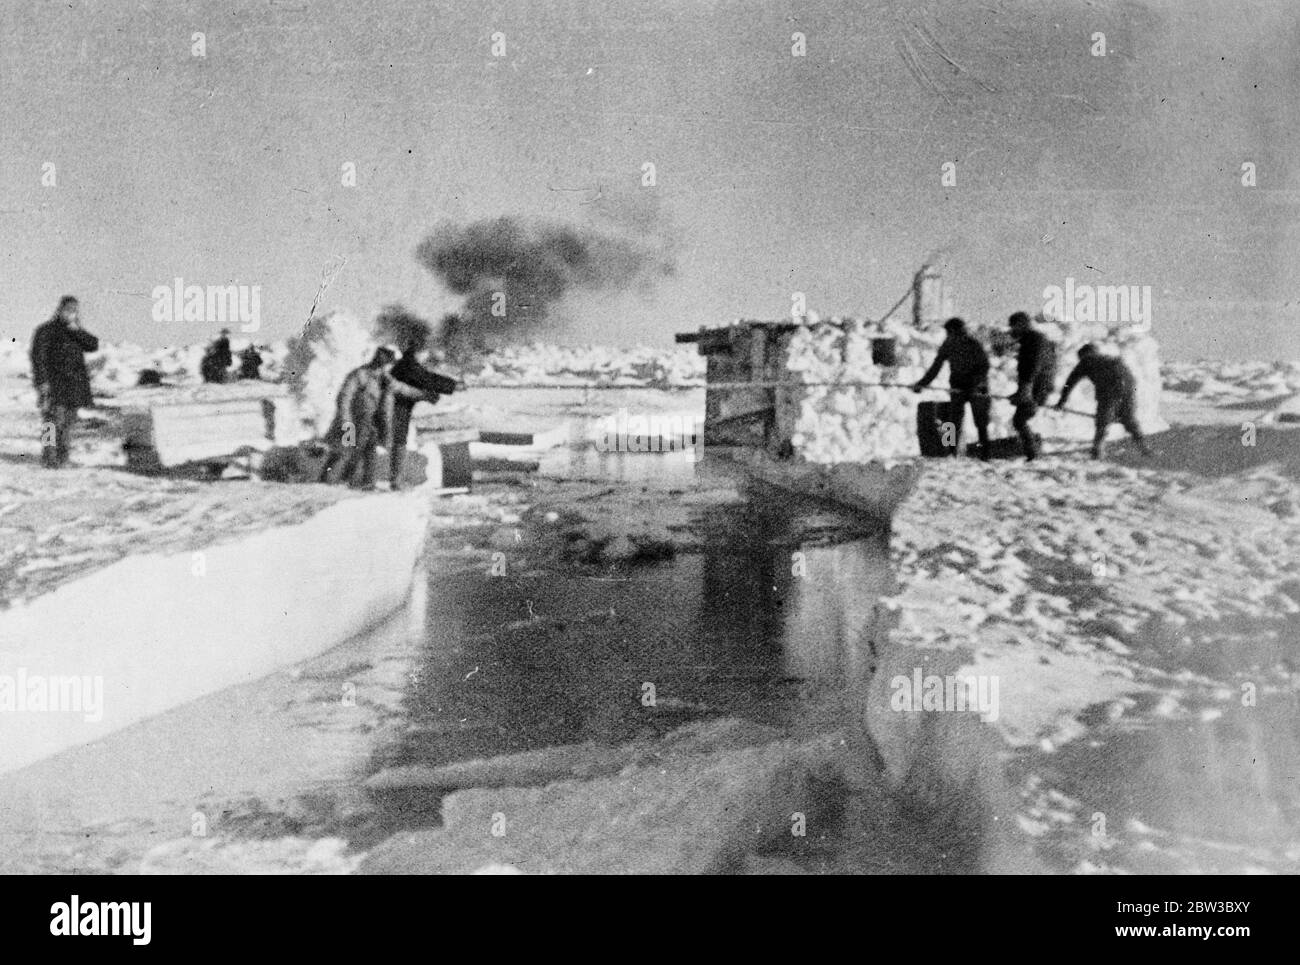 SS Chelyuskin , un navire à vapeur soviétique envoyé dans une expédition pour naviguer à travers la glace polaire le long de la route maritime du Nord de Mourmansk à Vladivostok , est devenu la glace dans les eaux arctiques pendant la navigation . Il a été pris dans les champs de glace en septembre. Après cela, il a dérivé dans le bloc de glace avant de s'enfoncer le 13 février 1934, écrasé par les icepacks près de l'île Kolyuchin dans la mer des Chukchi . L'équipage a réussi à s'échapper sur la glace et a construit une piste d'atterrissage de fortune en utilisant seulement quelques bêches , des pelles à glace et deux barres de pied de biche , qui ont aidé au sauvetage de l'équipage . Cinquante trois hommes ont marché Banque D'Images